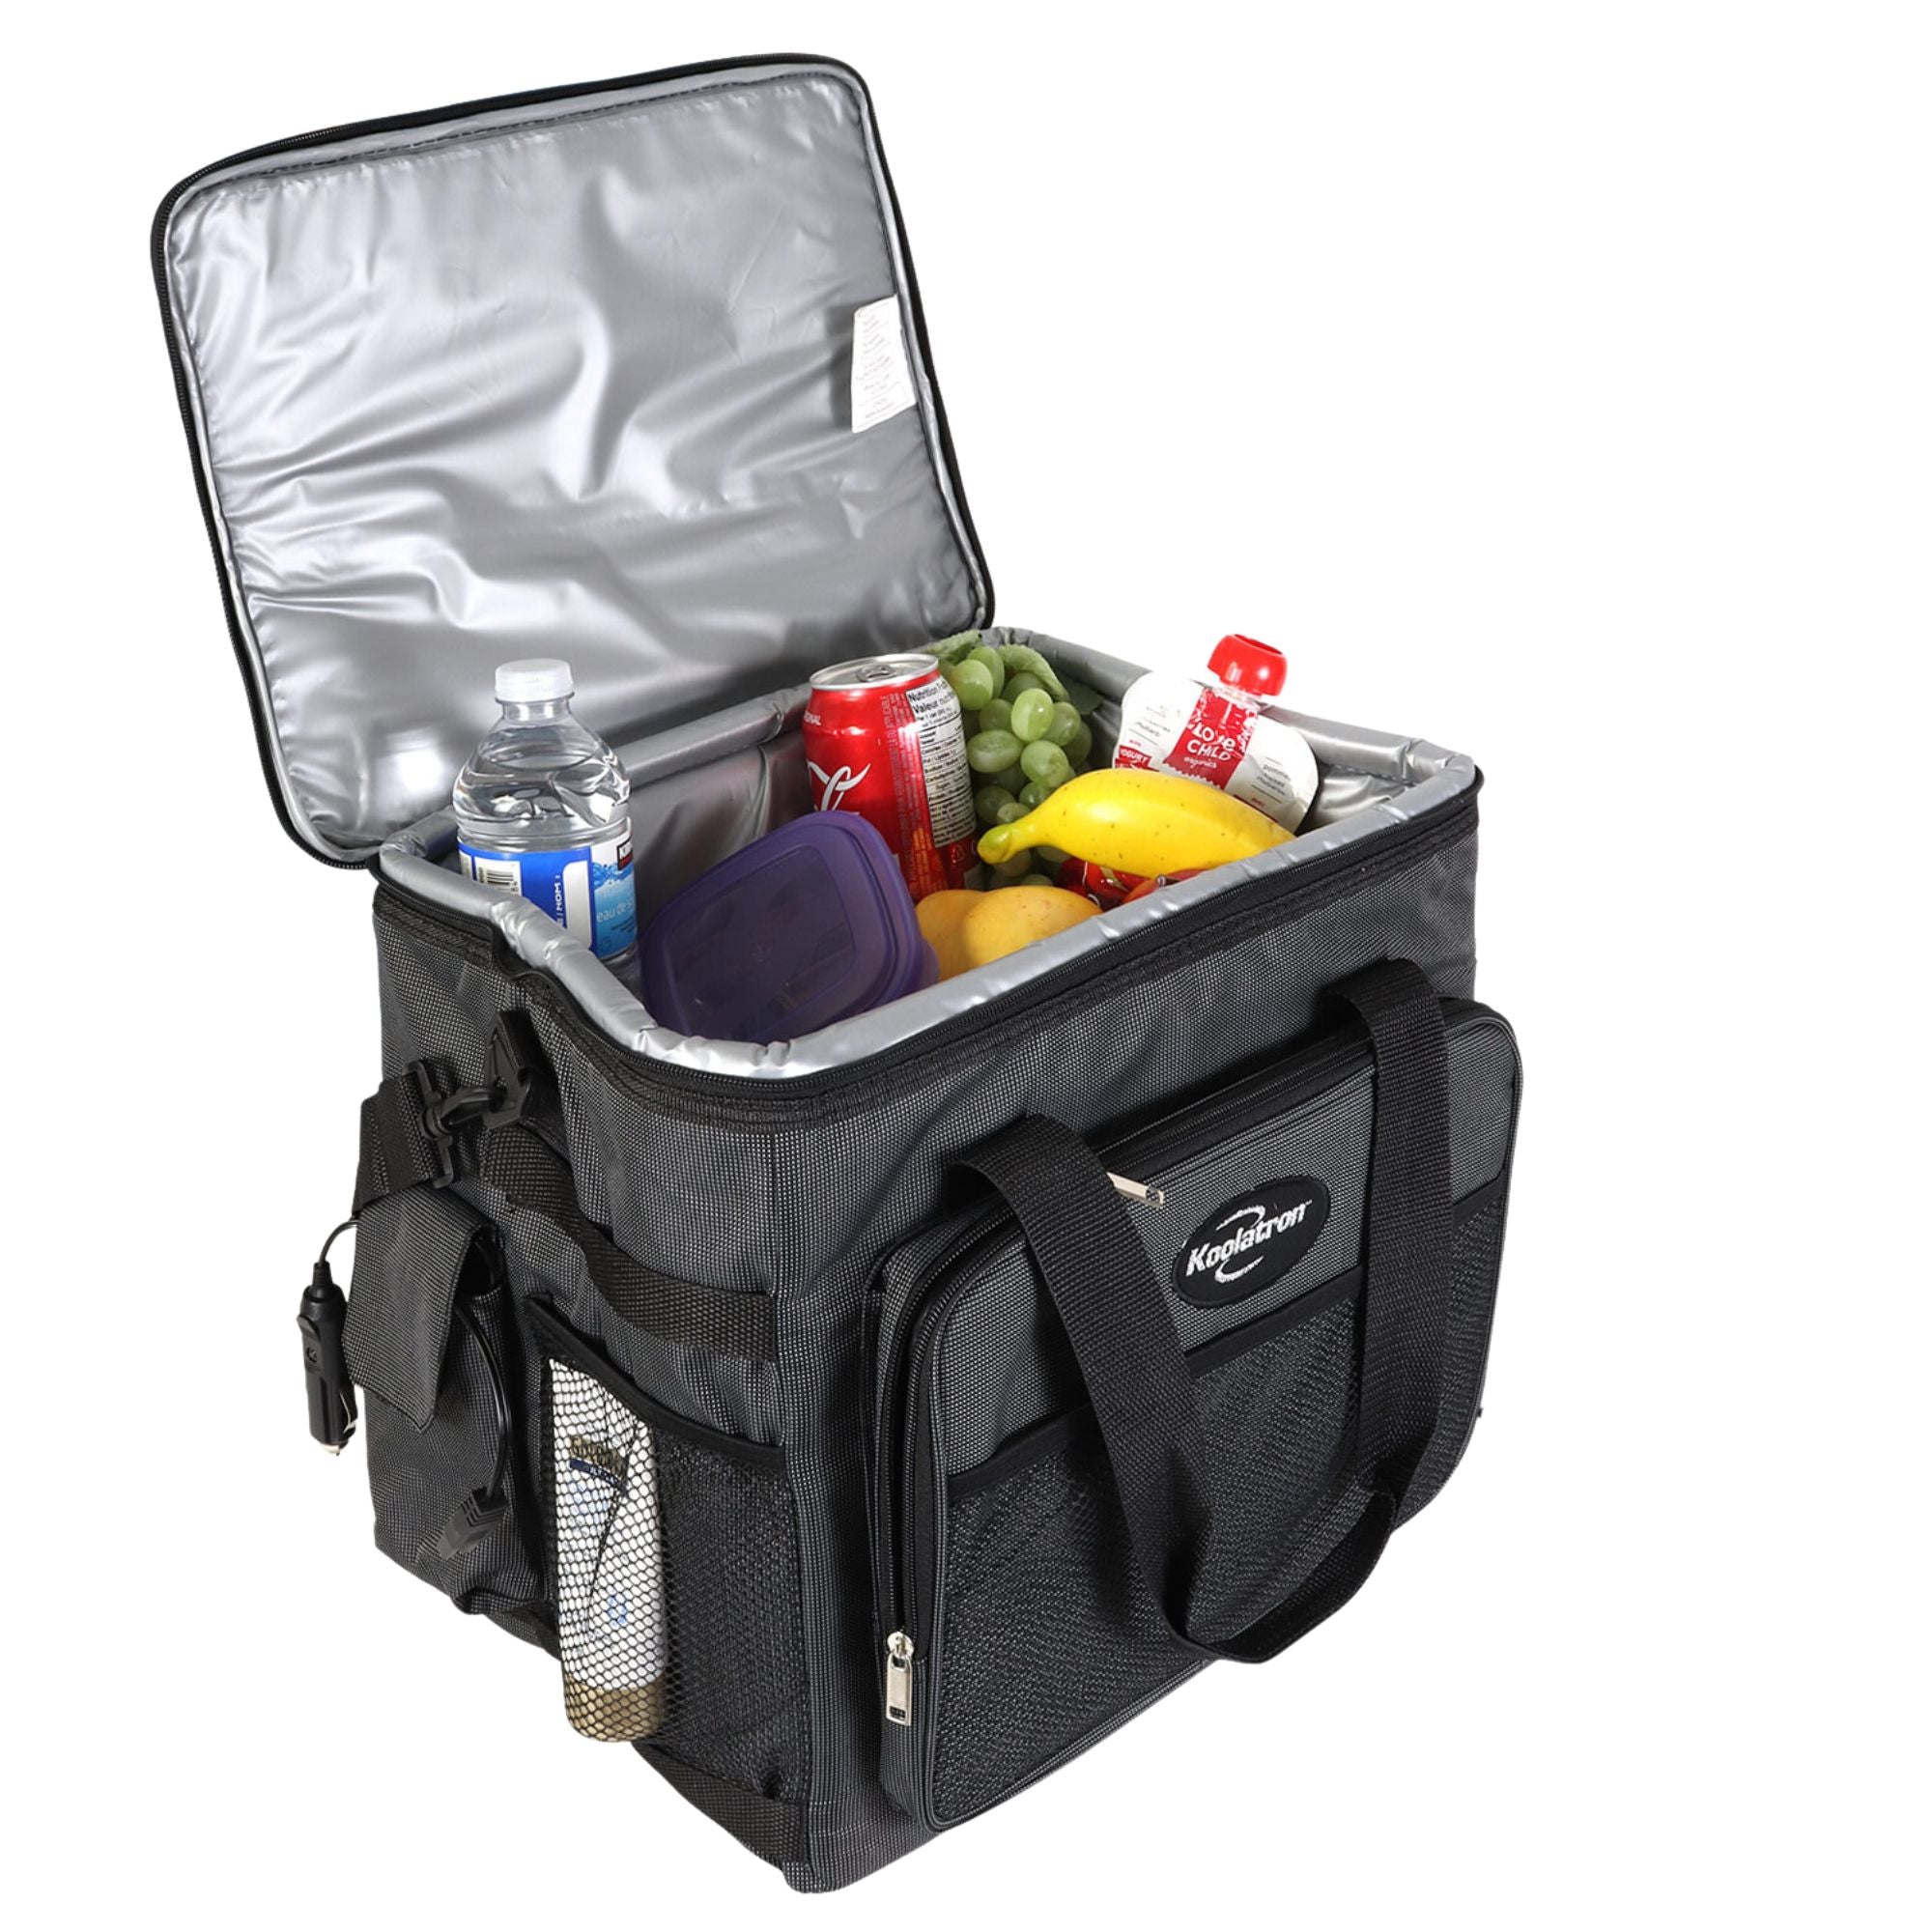 Koolatron 12V Electric Cooler Bag, Plug-In Soft Bag Cooler